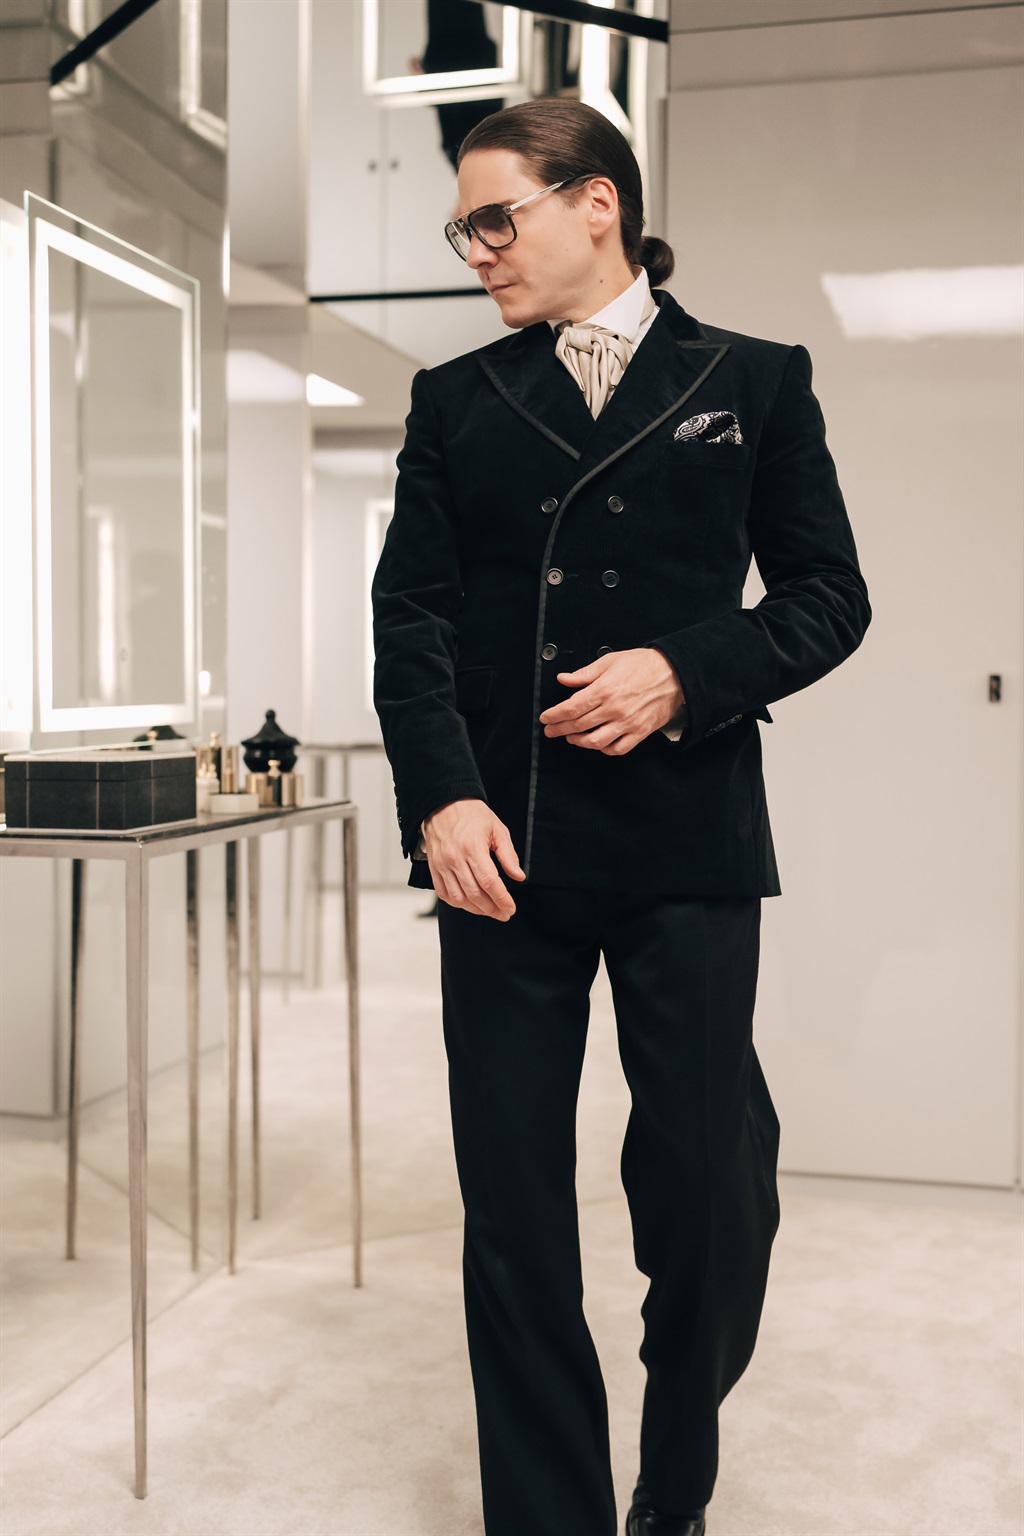 Daniel Bruhl u Becoming Karl Lagerfeld (Ljubaznošću 